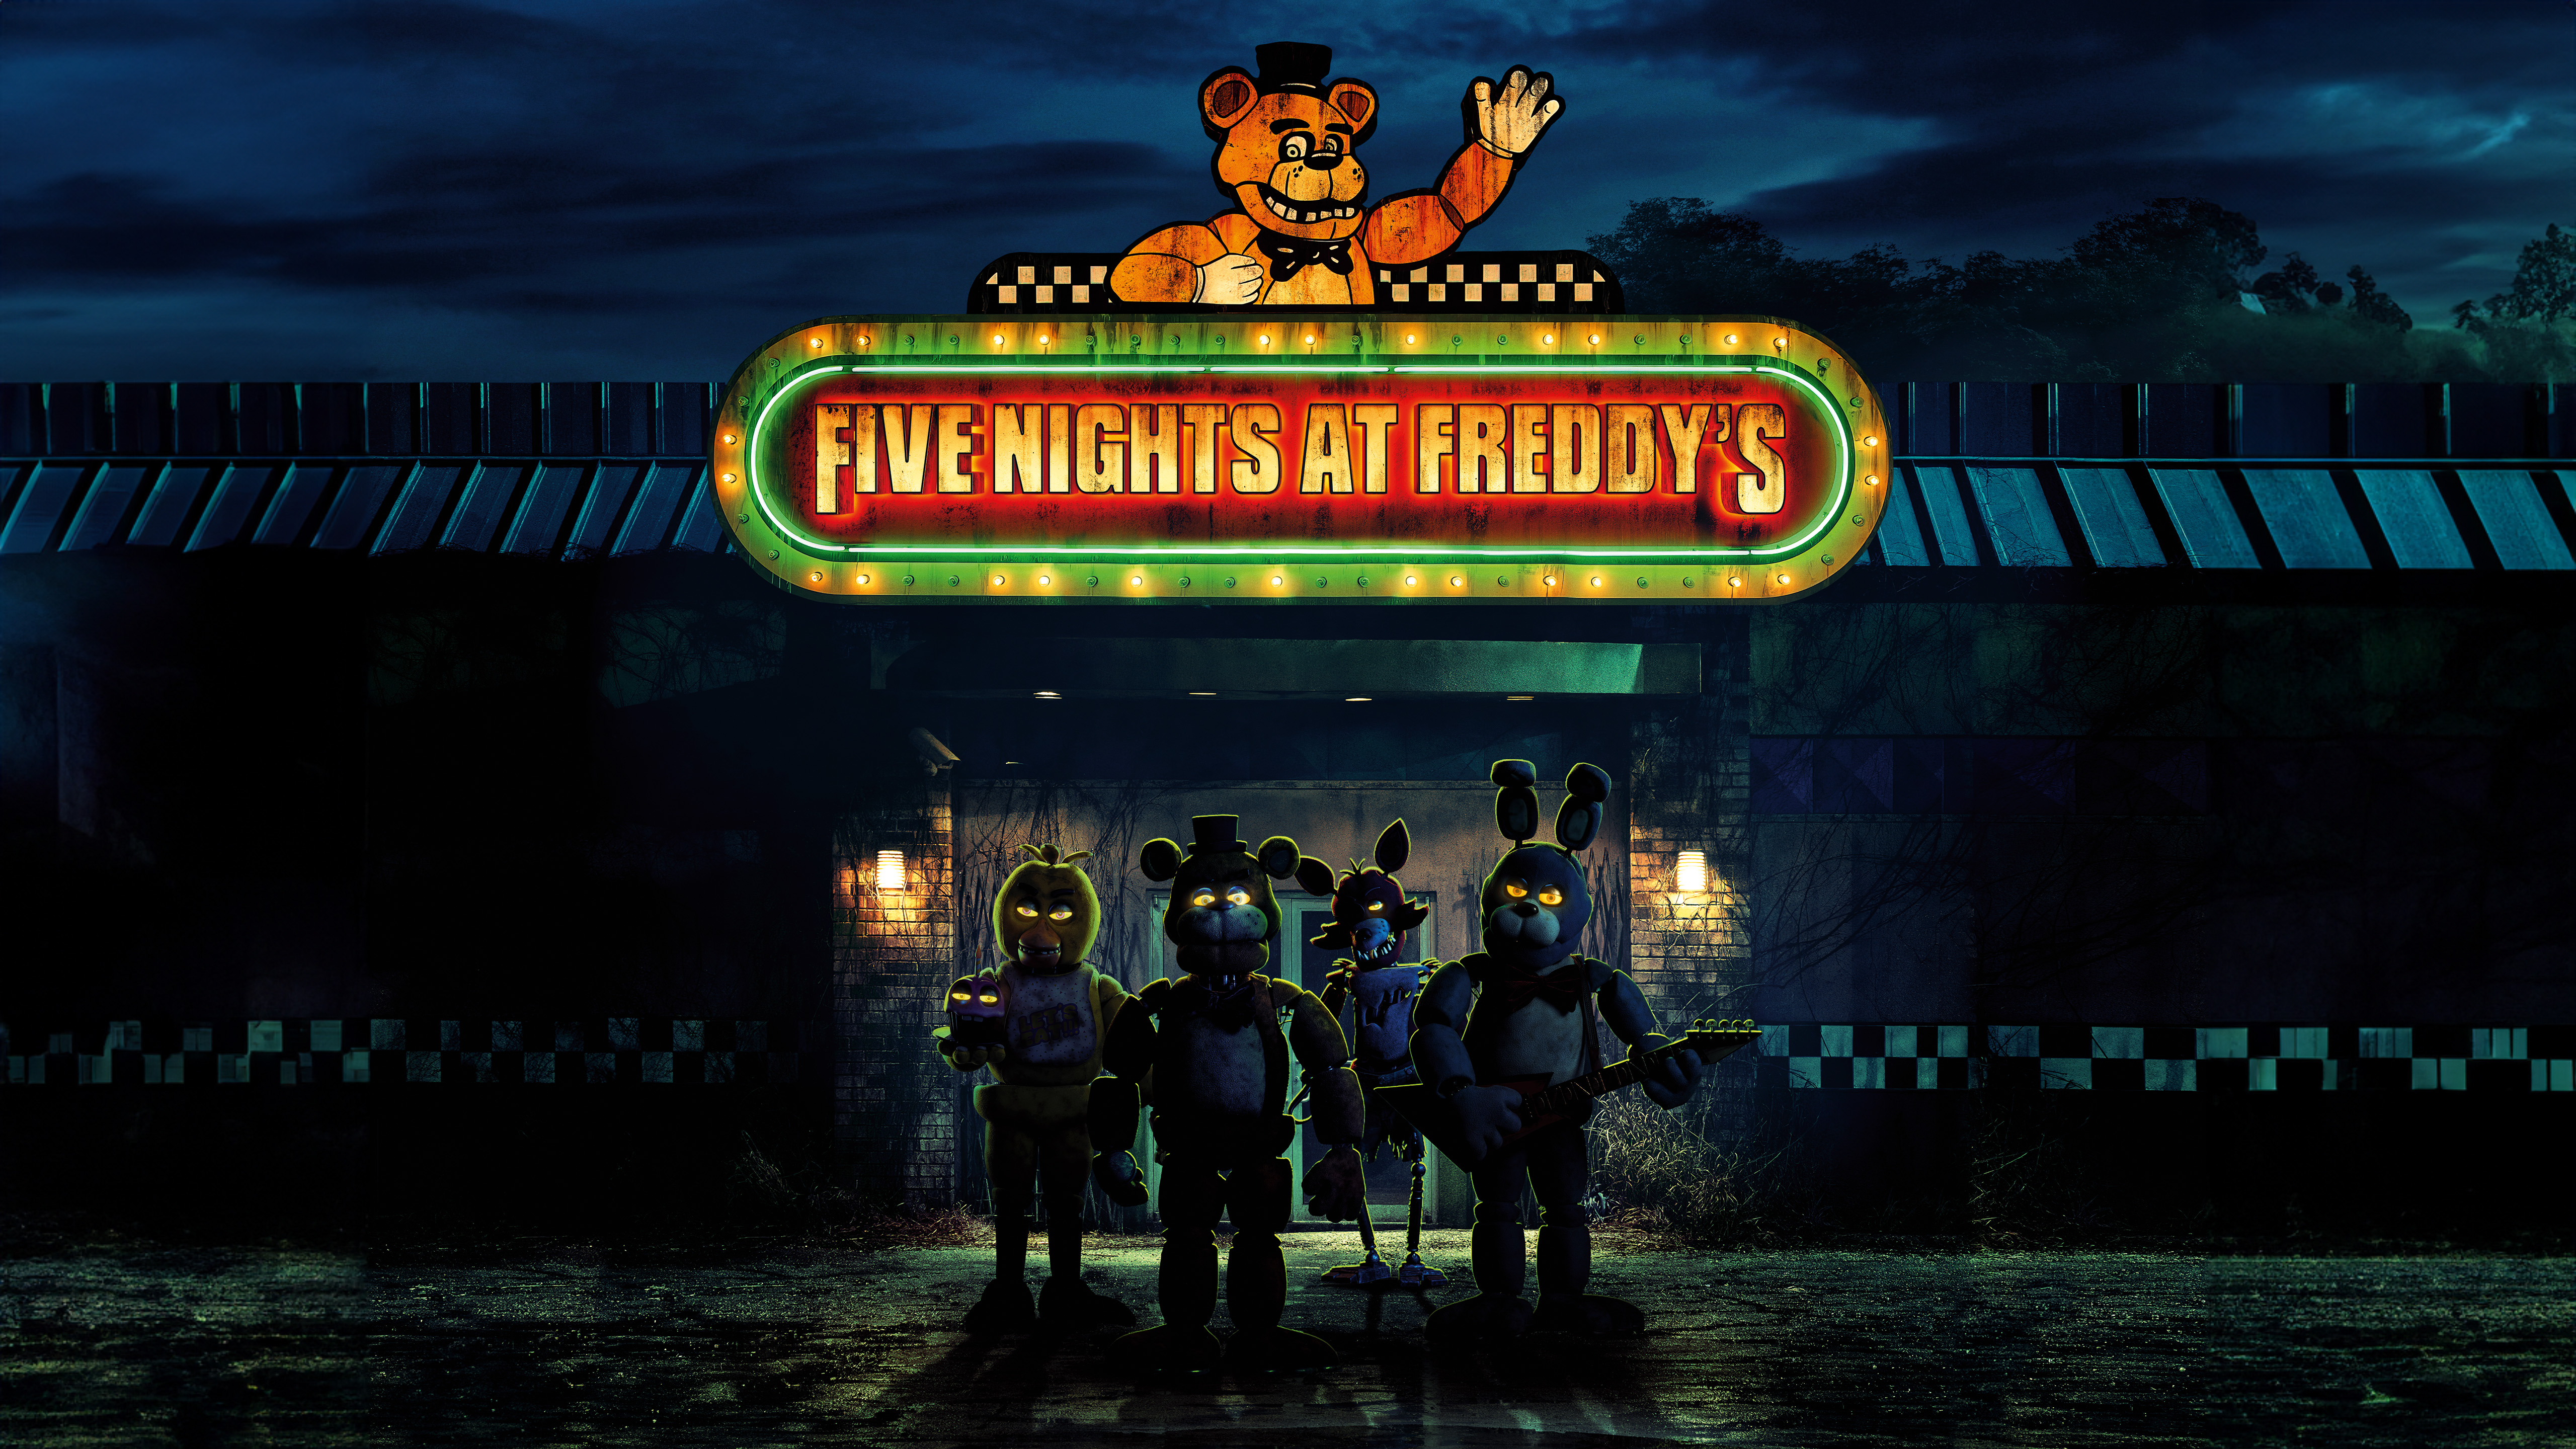 Five Nights At Freddys Freddy Fazbear Bonnie FNAF Chica FNAF Foxy FNAF Horror Movies Digital Art Sky 5120x2880